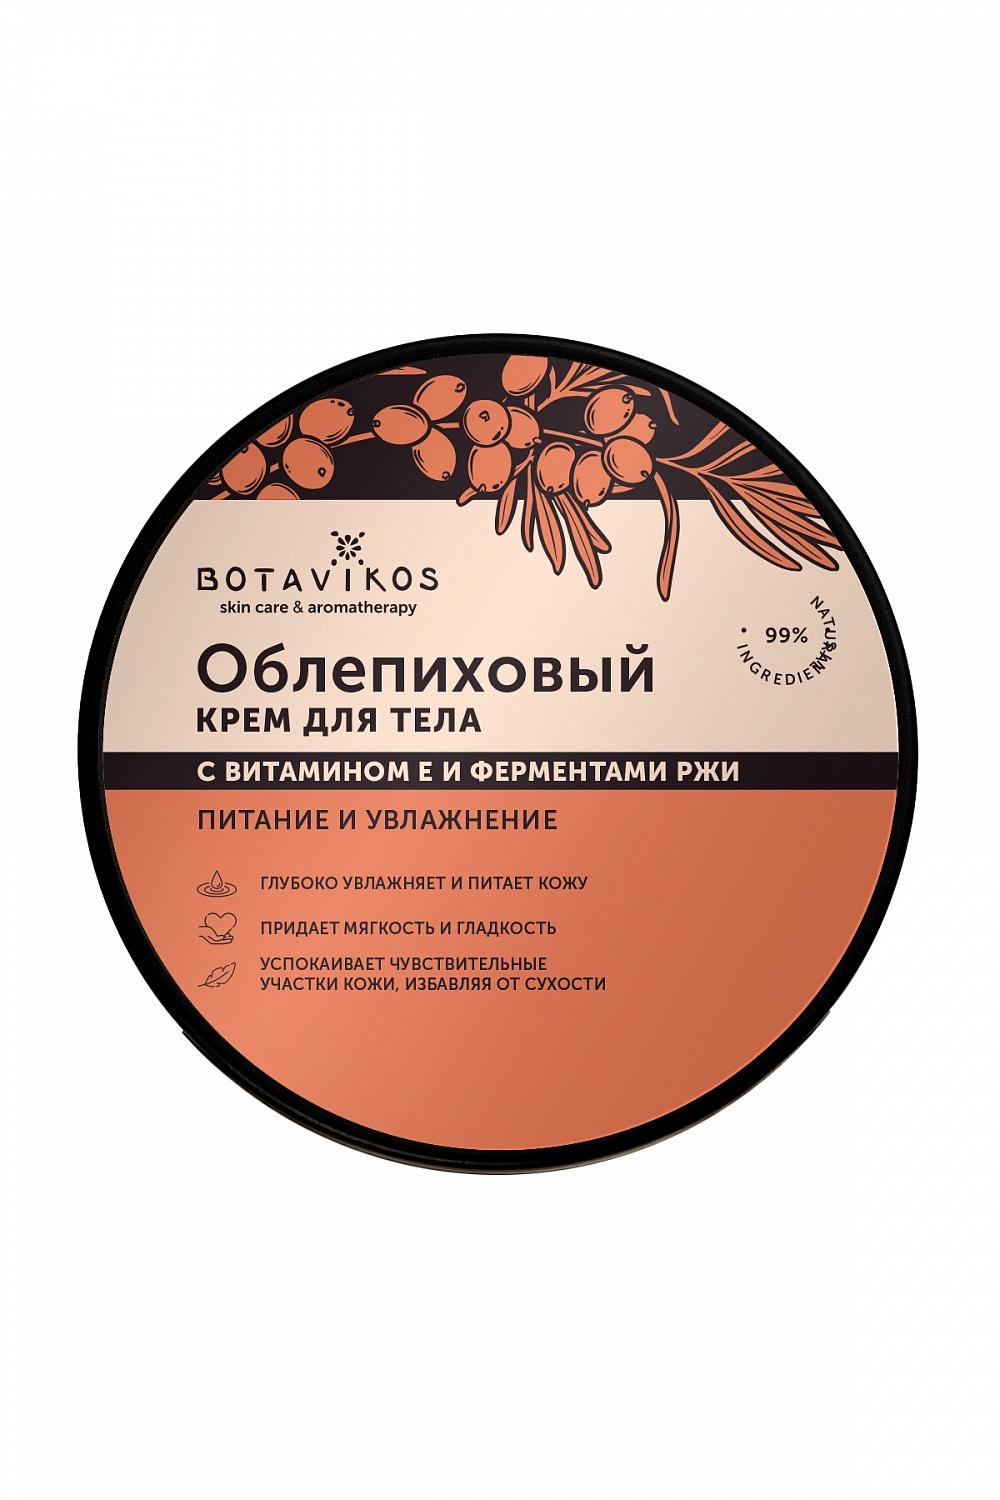 Крем для тела Облепиховый Питание и увлажнение Botavikos, 250мл купить в онлайн экомаркете